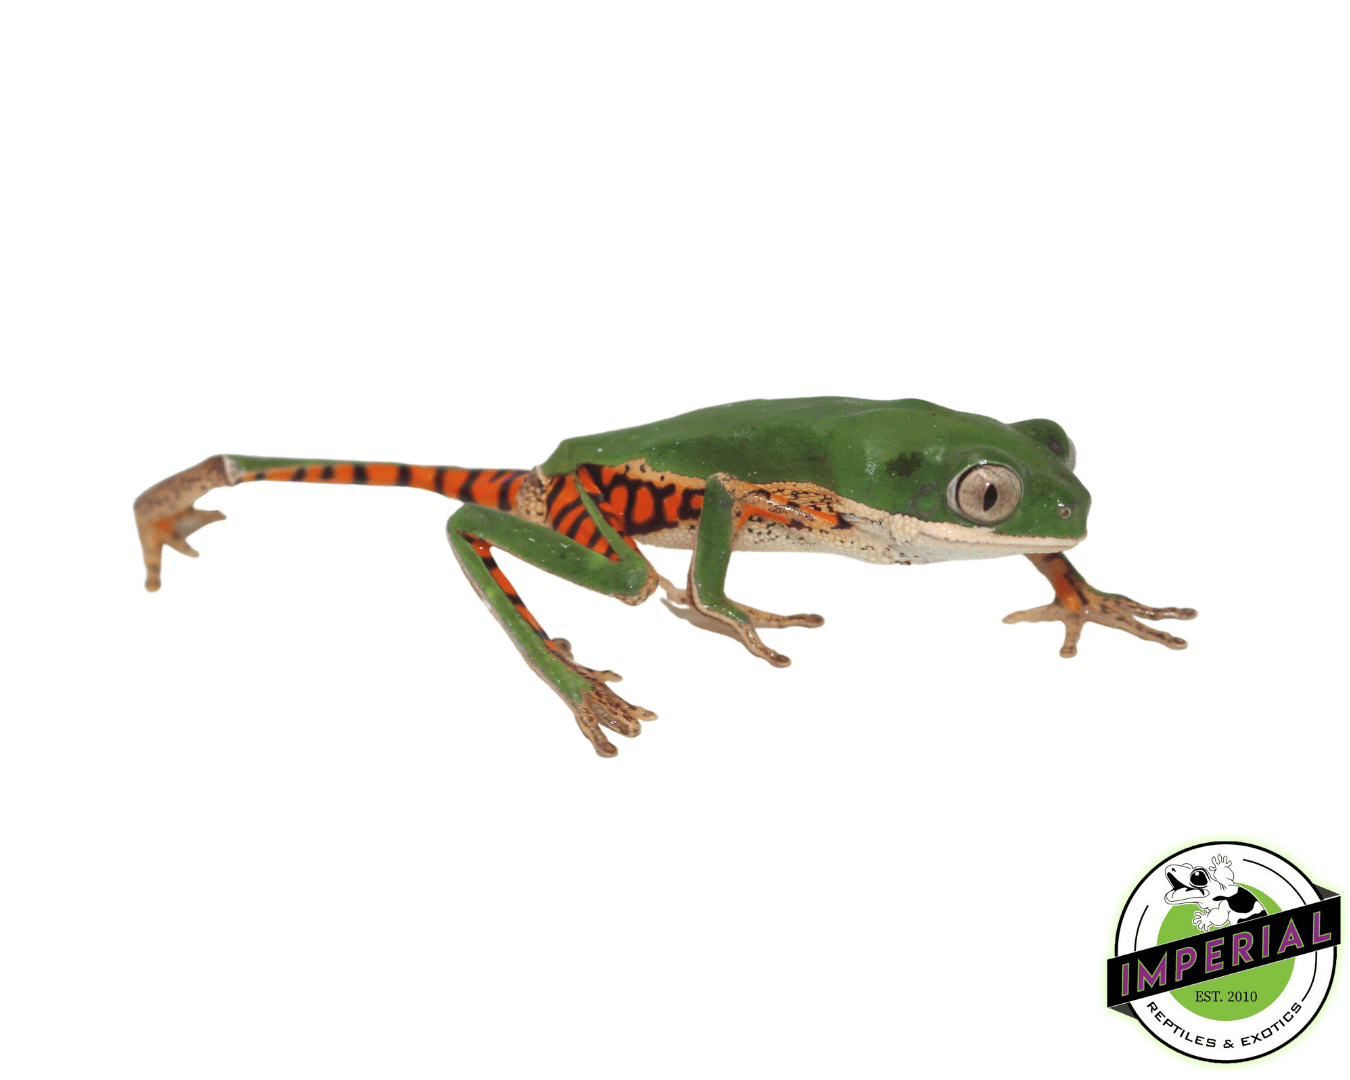 Tiger Leg Monkey frog for sale, buy amphibians online